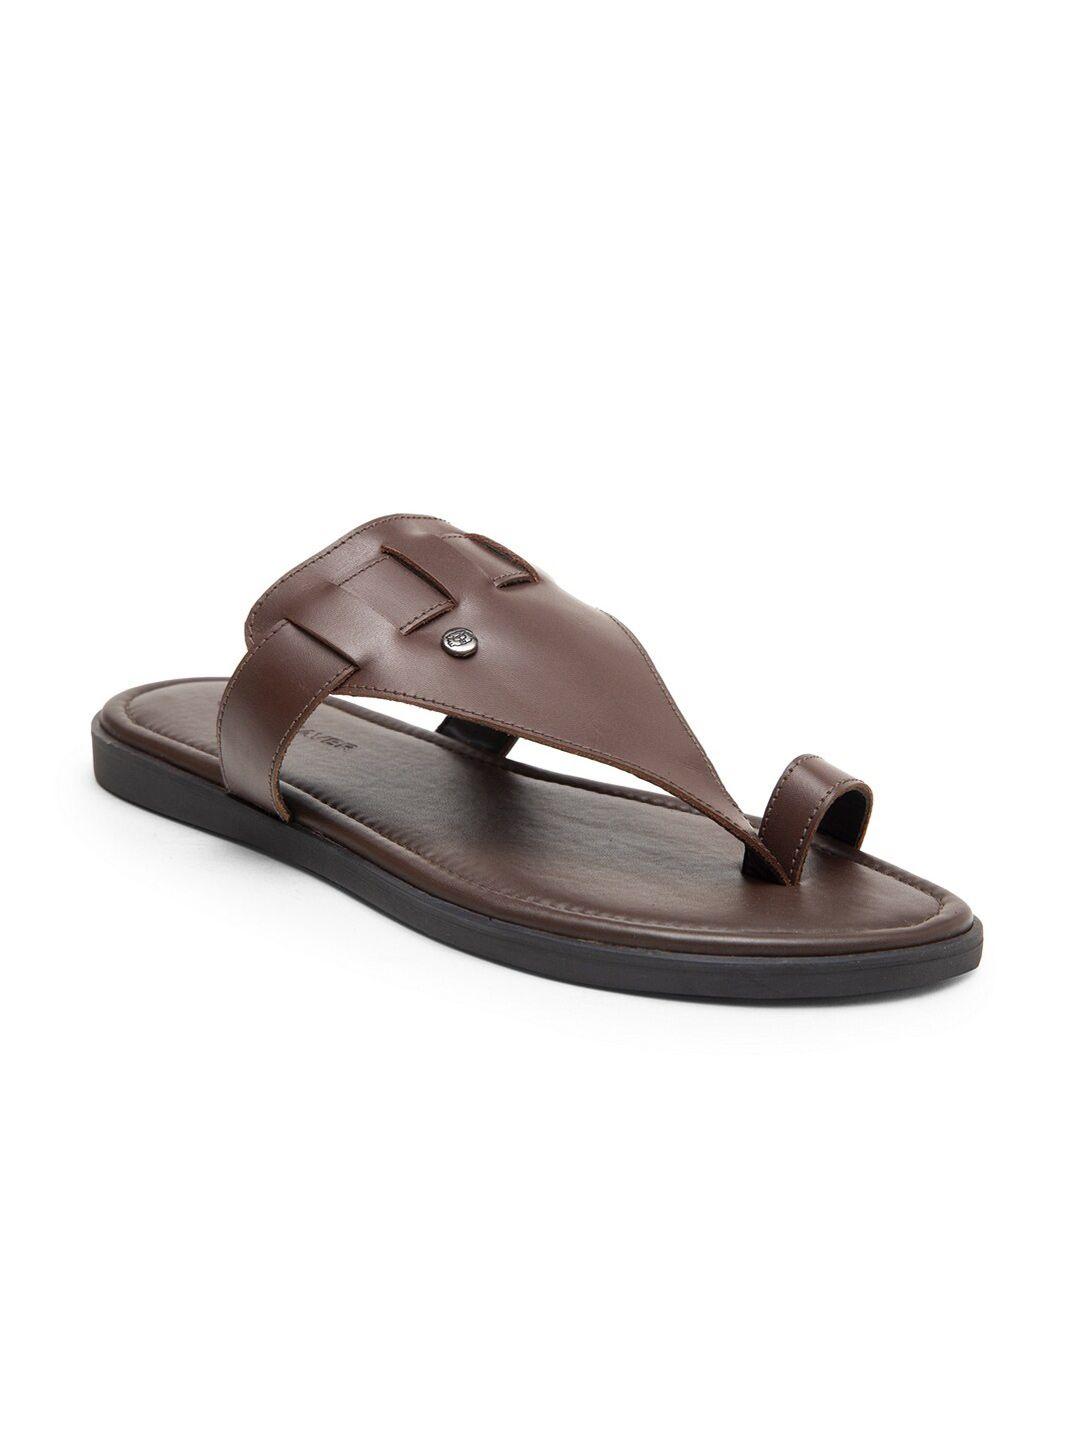 beaver men leather slip-on comfort sandals